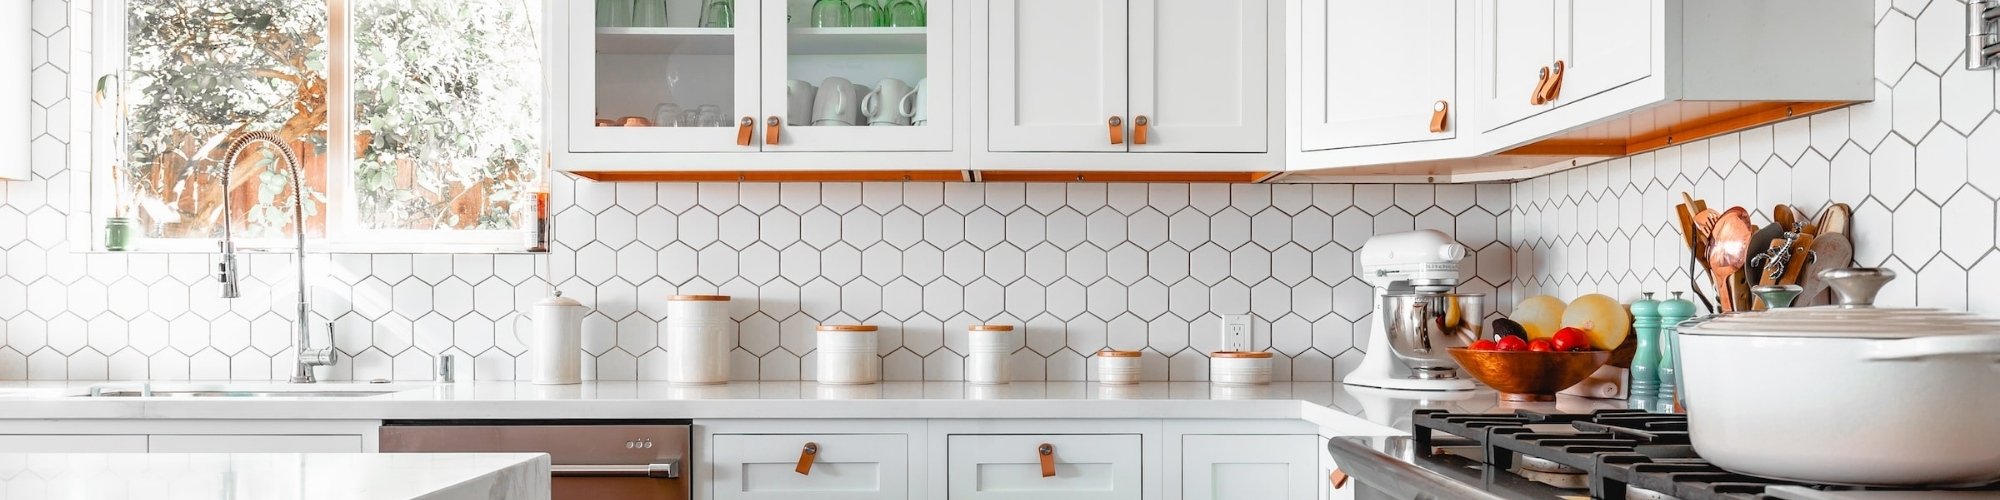 Tile backsplash in a modern kitchen